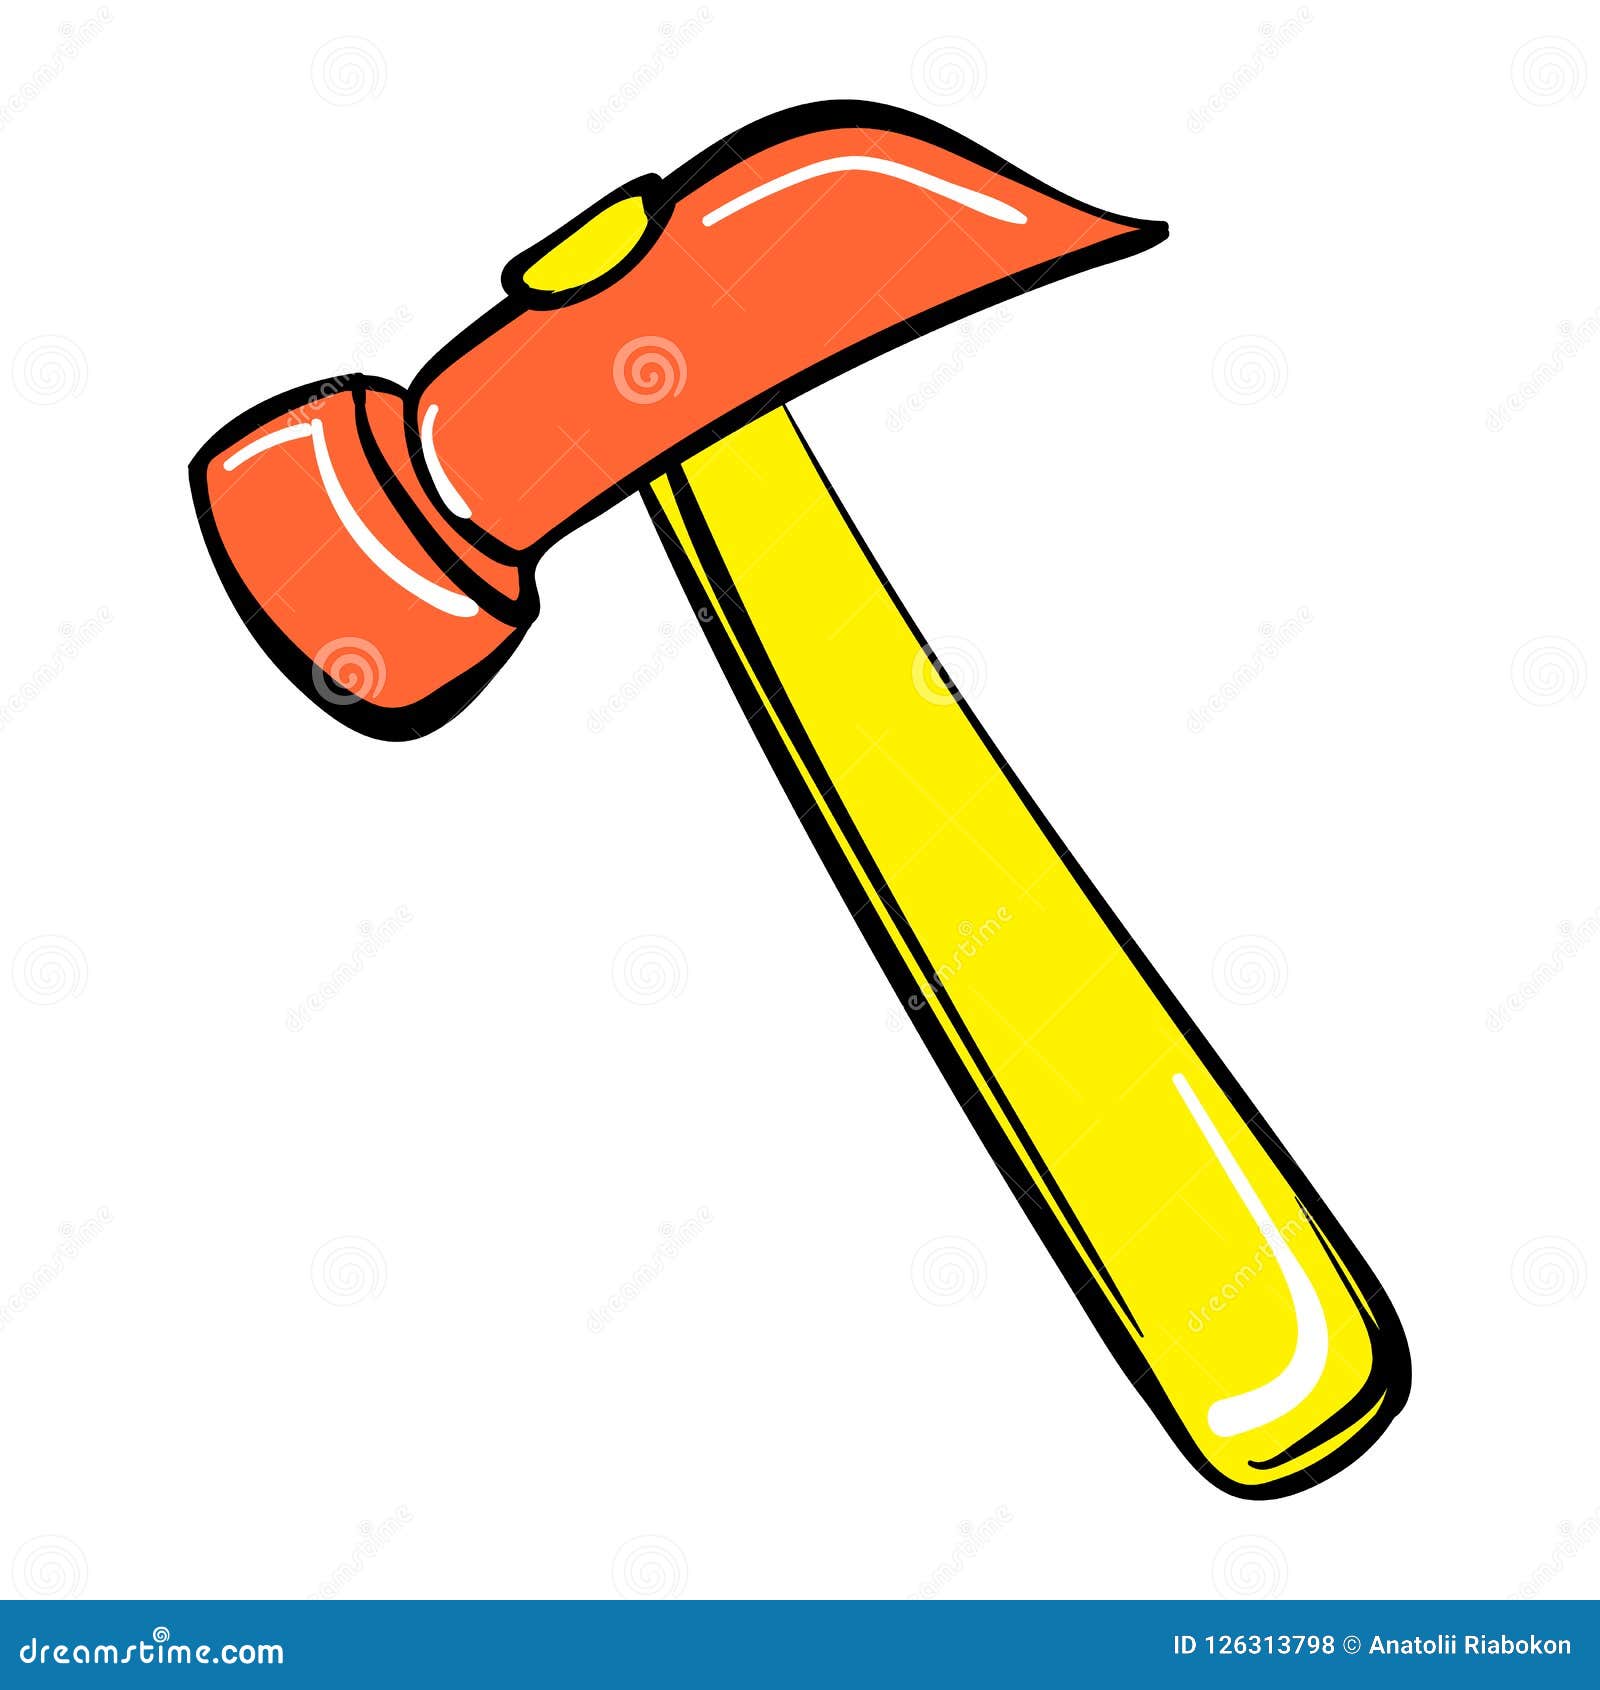 Hammer icon, cartoon style stock vector. Illustration of illustration